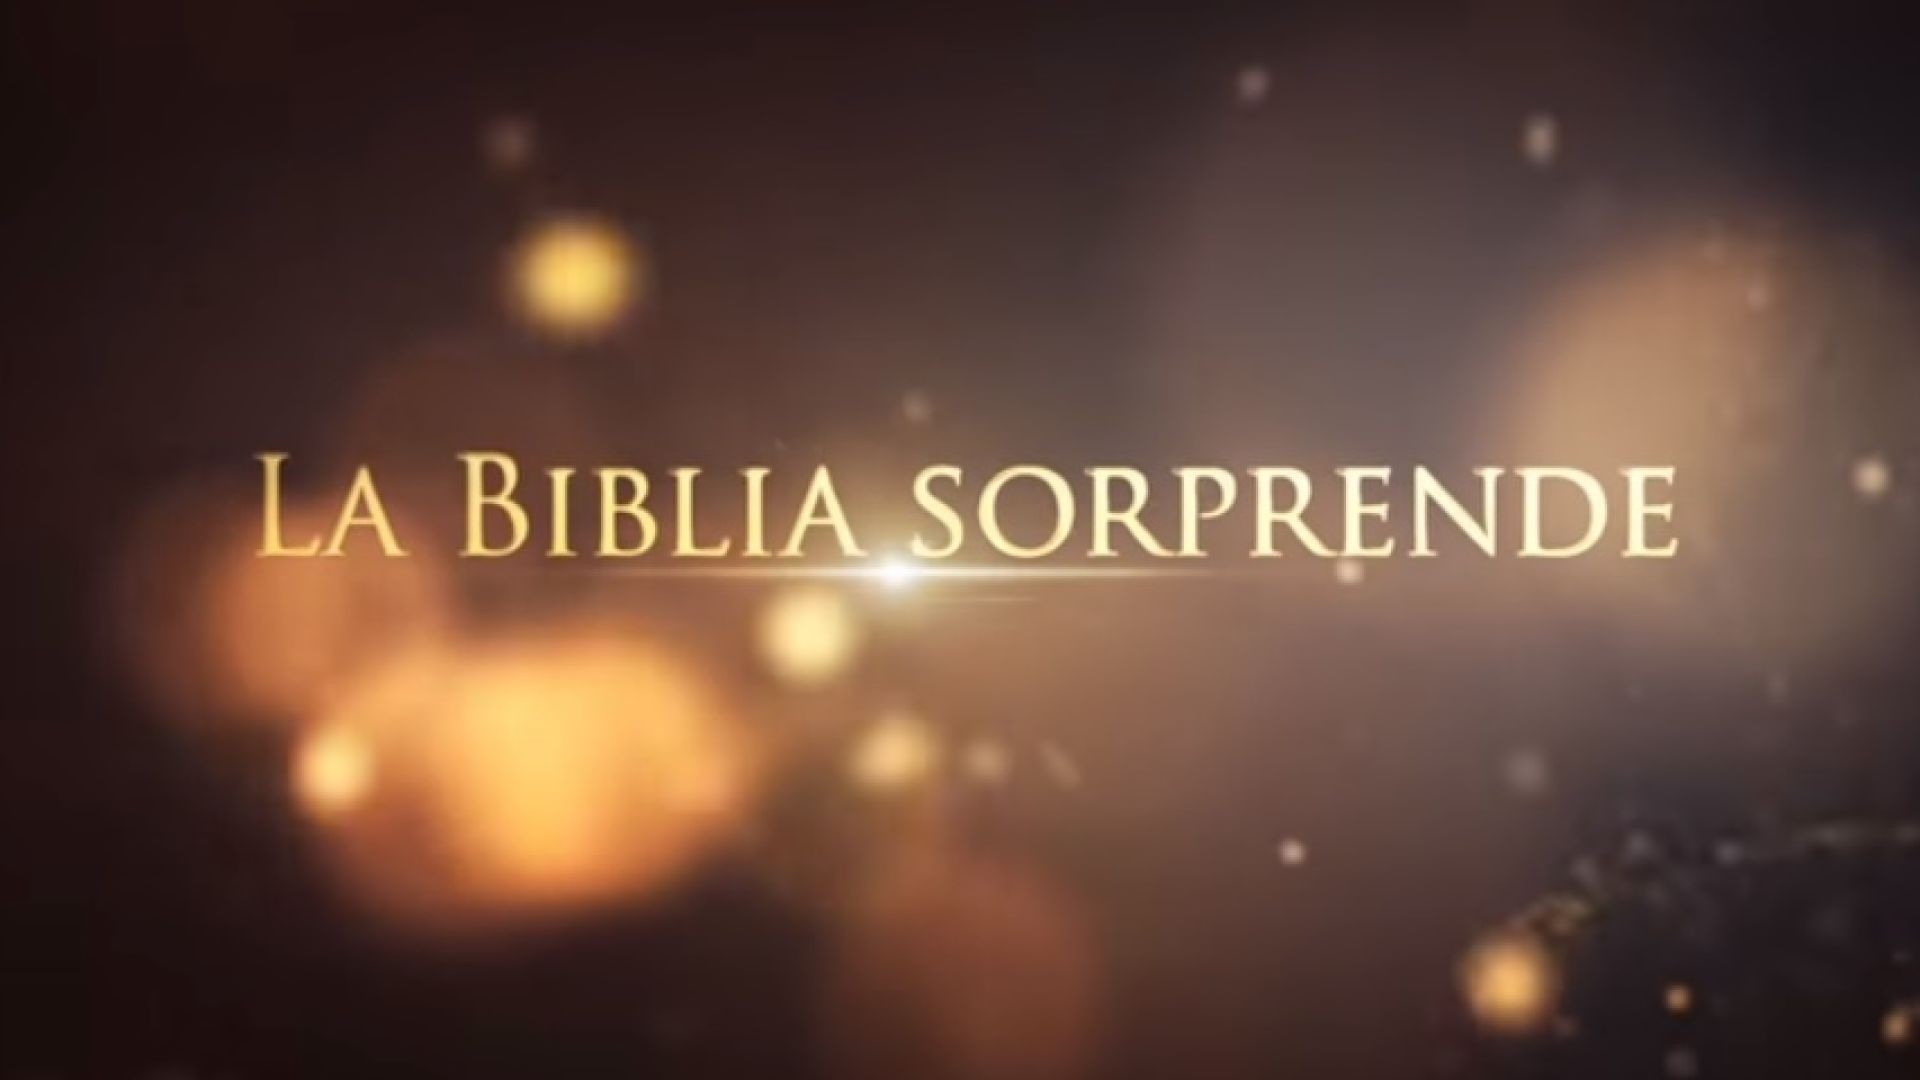 02 Orígenes | La Biblia Sorprende 1ra temporada - Juan Surroca